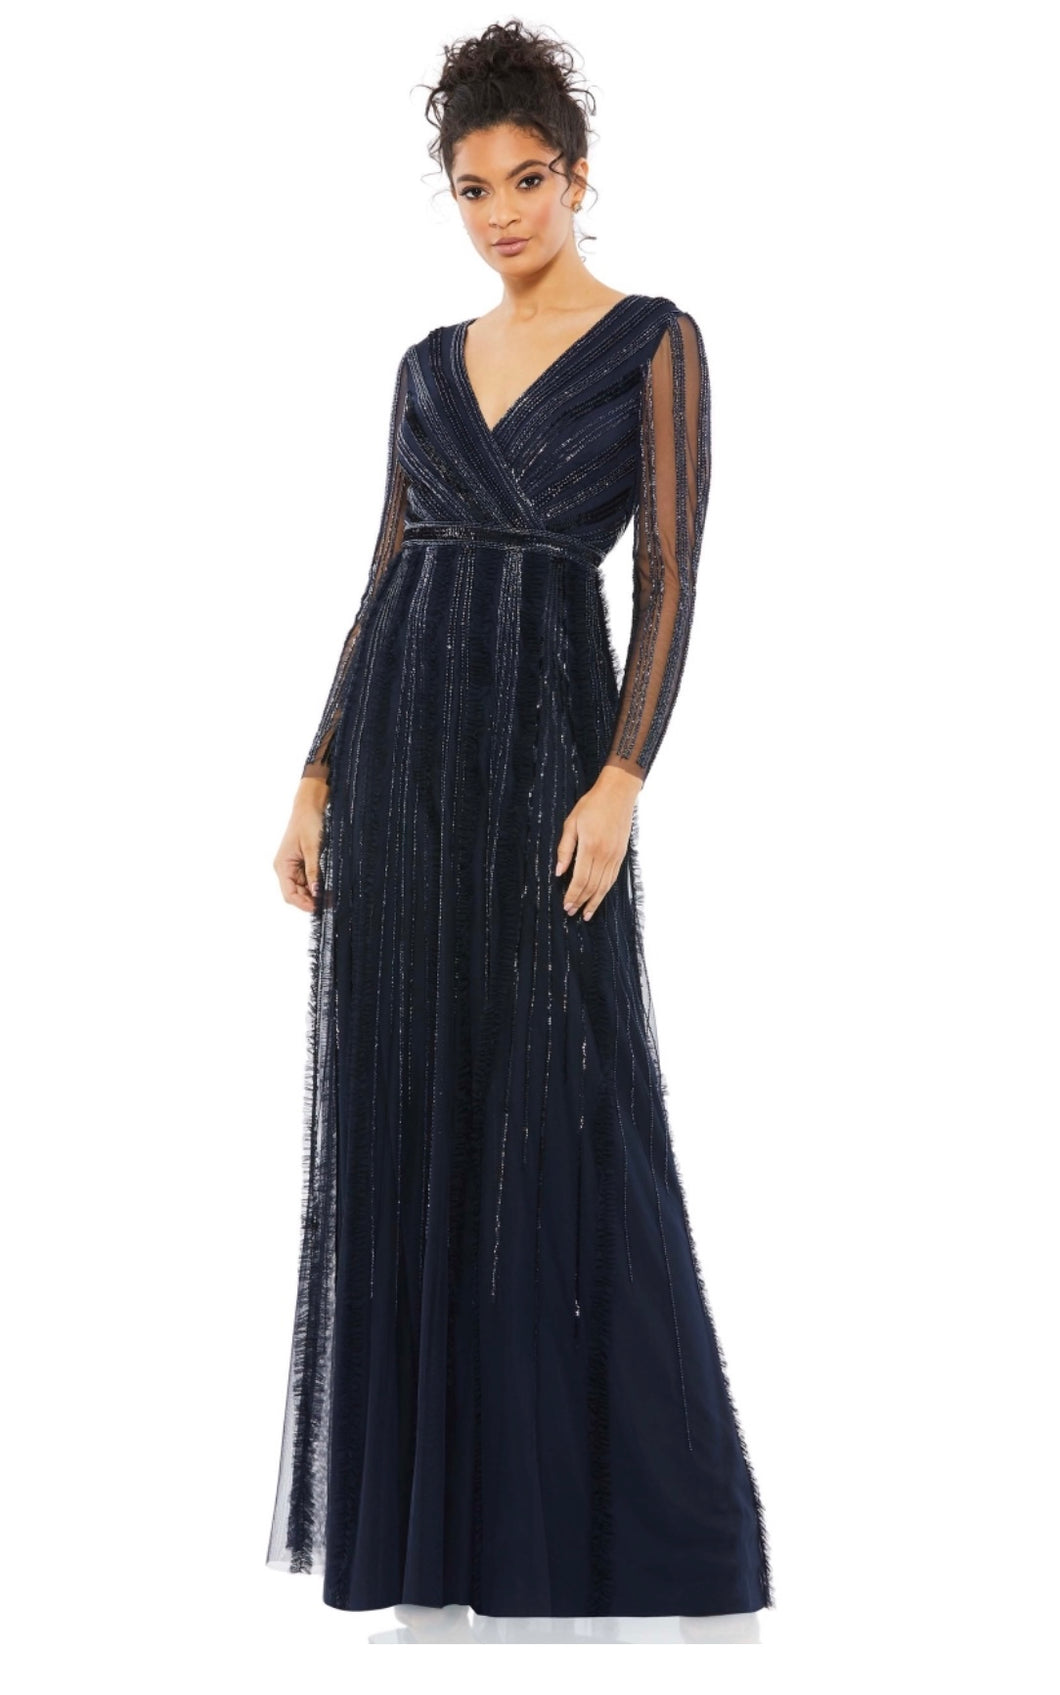 Macduggal 9145 Navy Blue Elegant Embellished Evening Gown